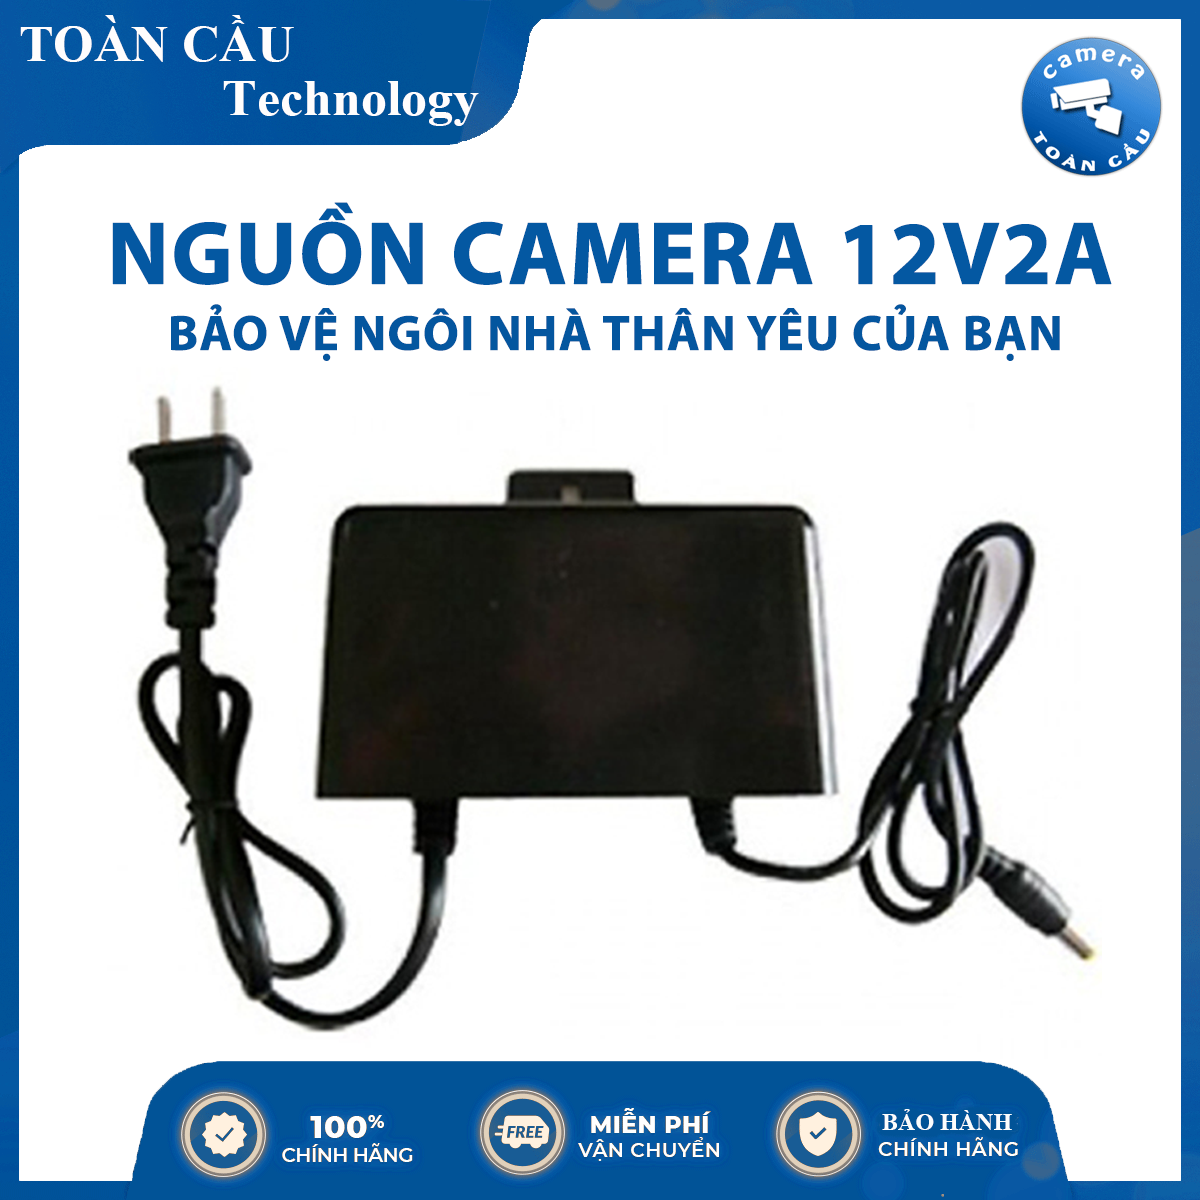 [100% CHÍNH HÃNG] Nguồn Camera 12V2A - Hiệu Suất Hoạt Động Cao - Camera Toàn Cầu